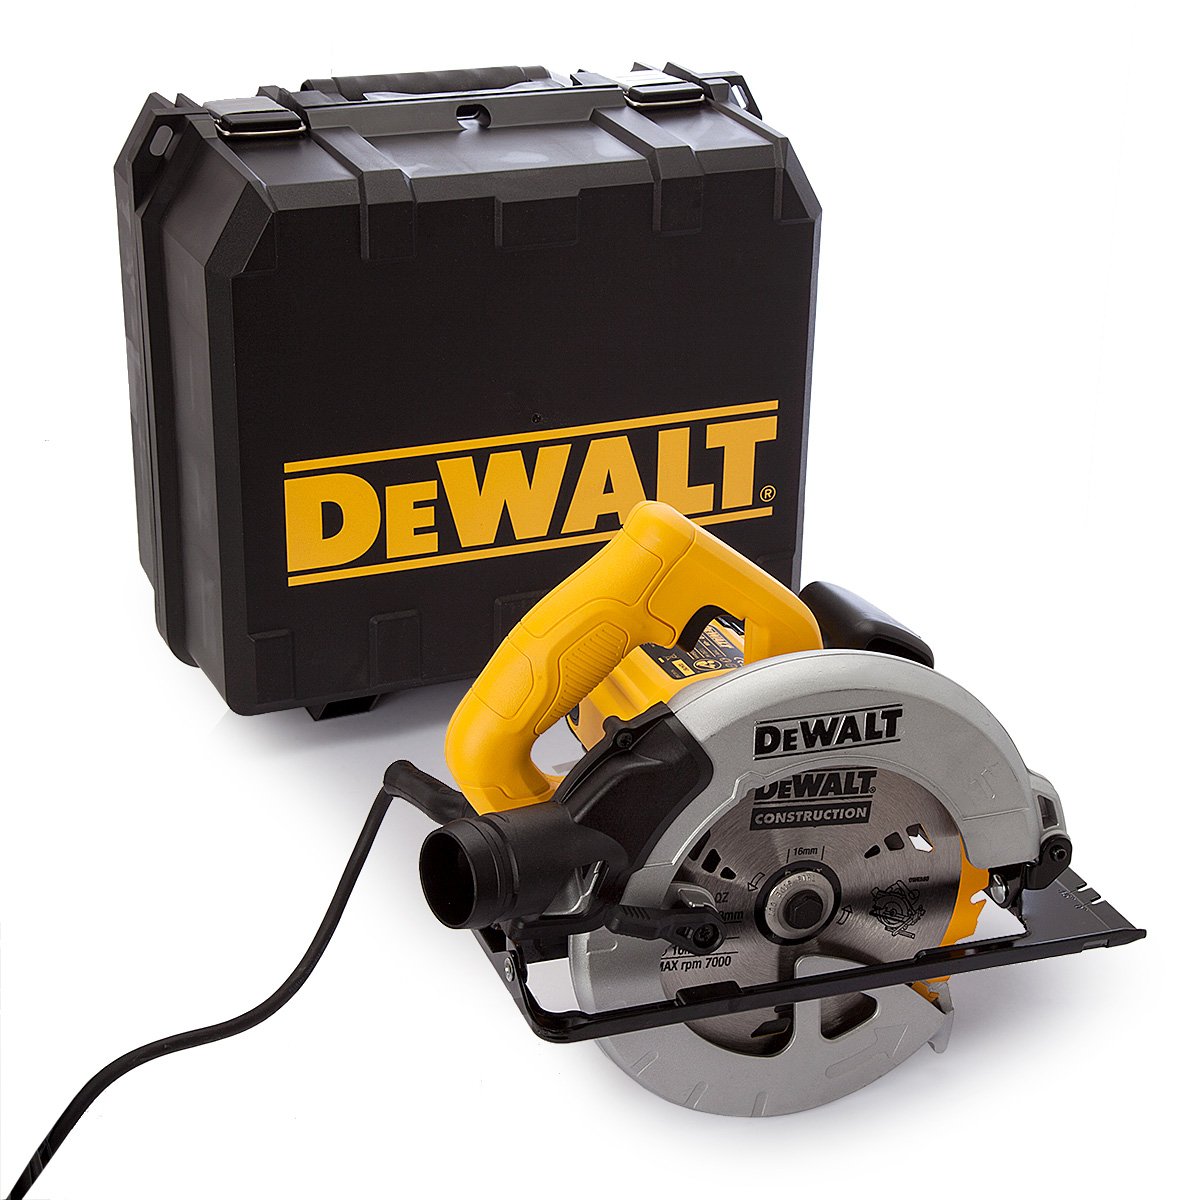 DeWalt 240V 184mm 65mm Compact Circular Saw in Kitbox